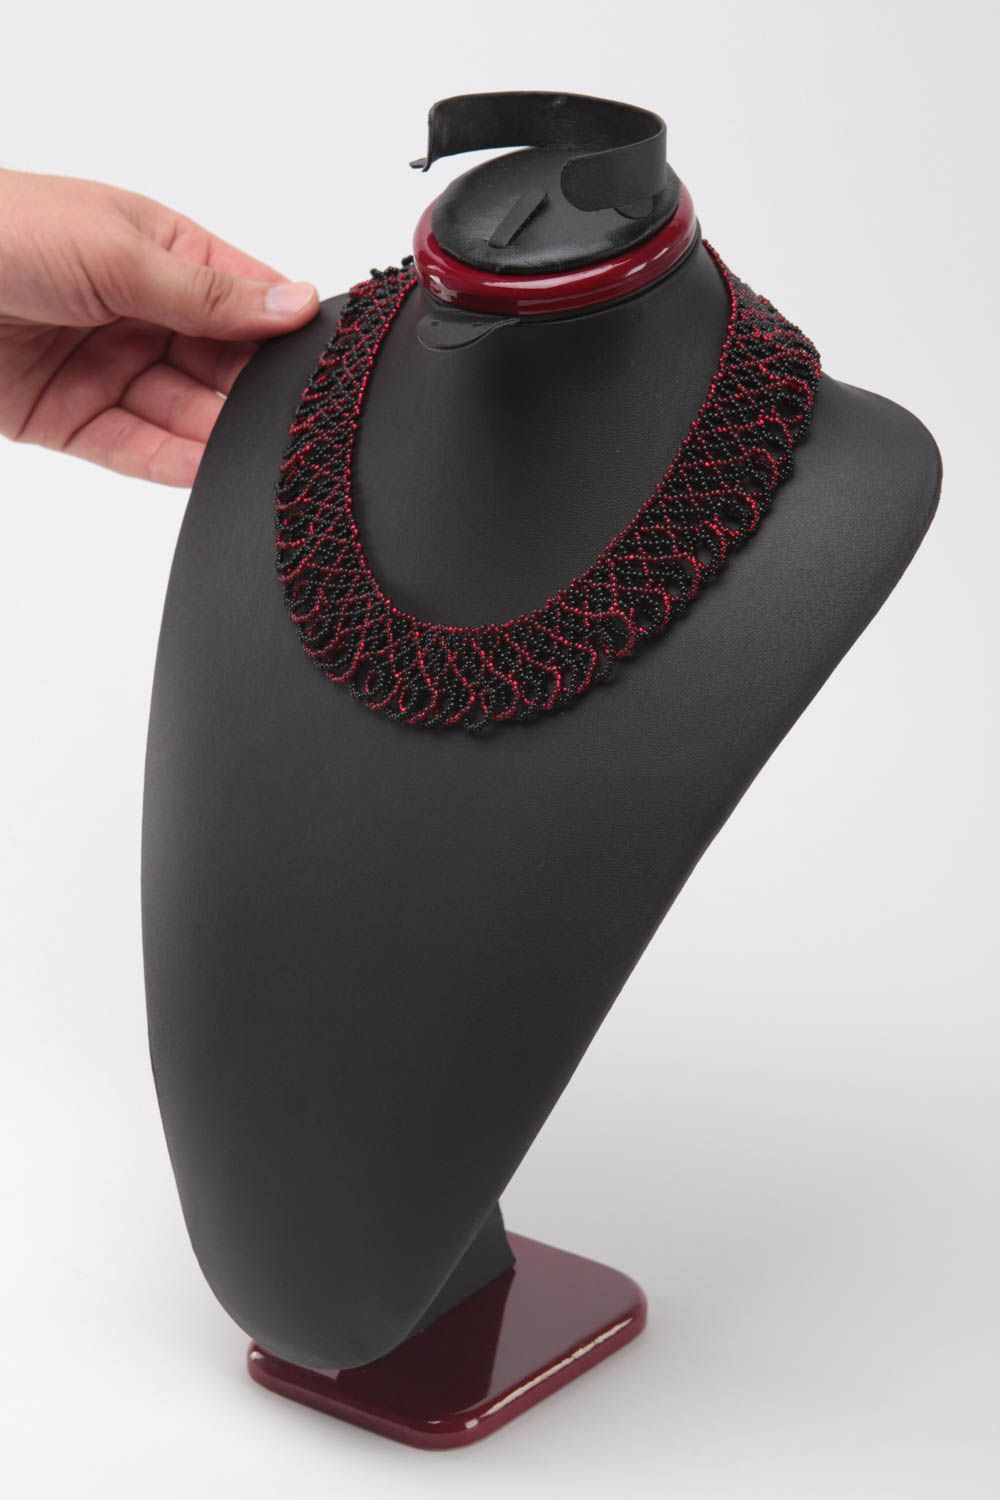 Ожерелье из бисера черное с красным красивое стильное нарядное ручная работа фото 5